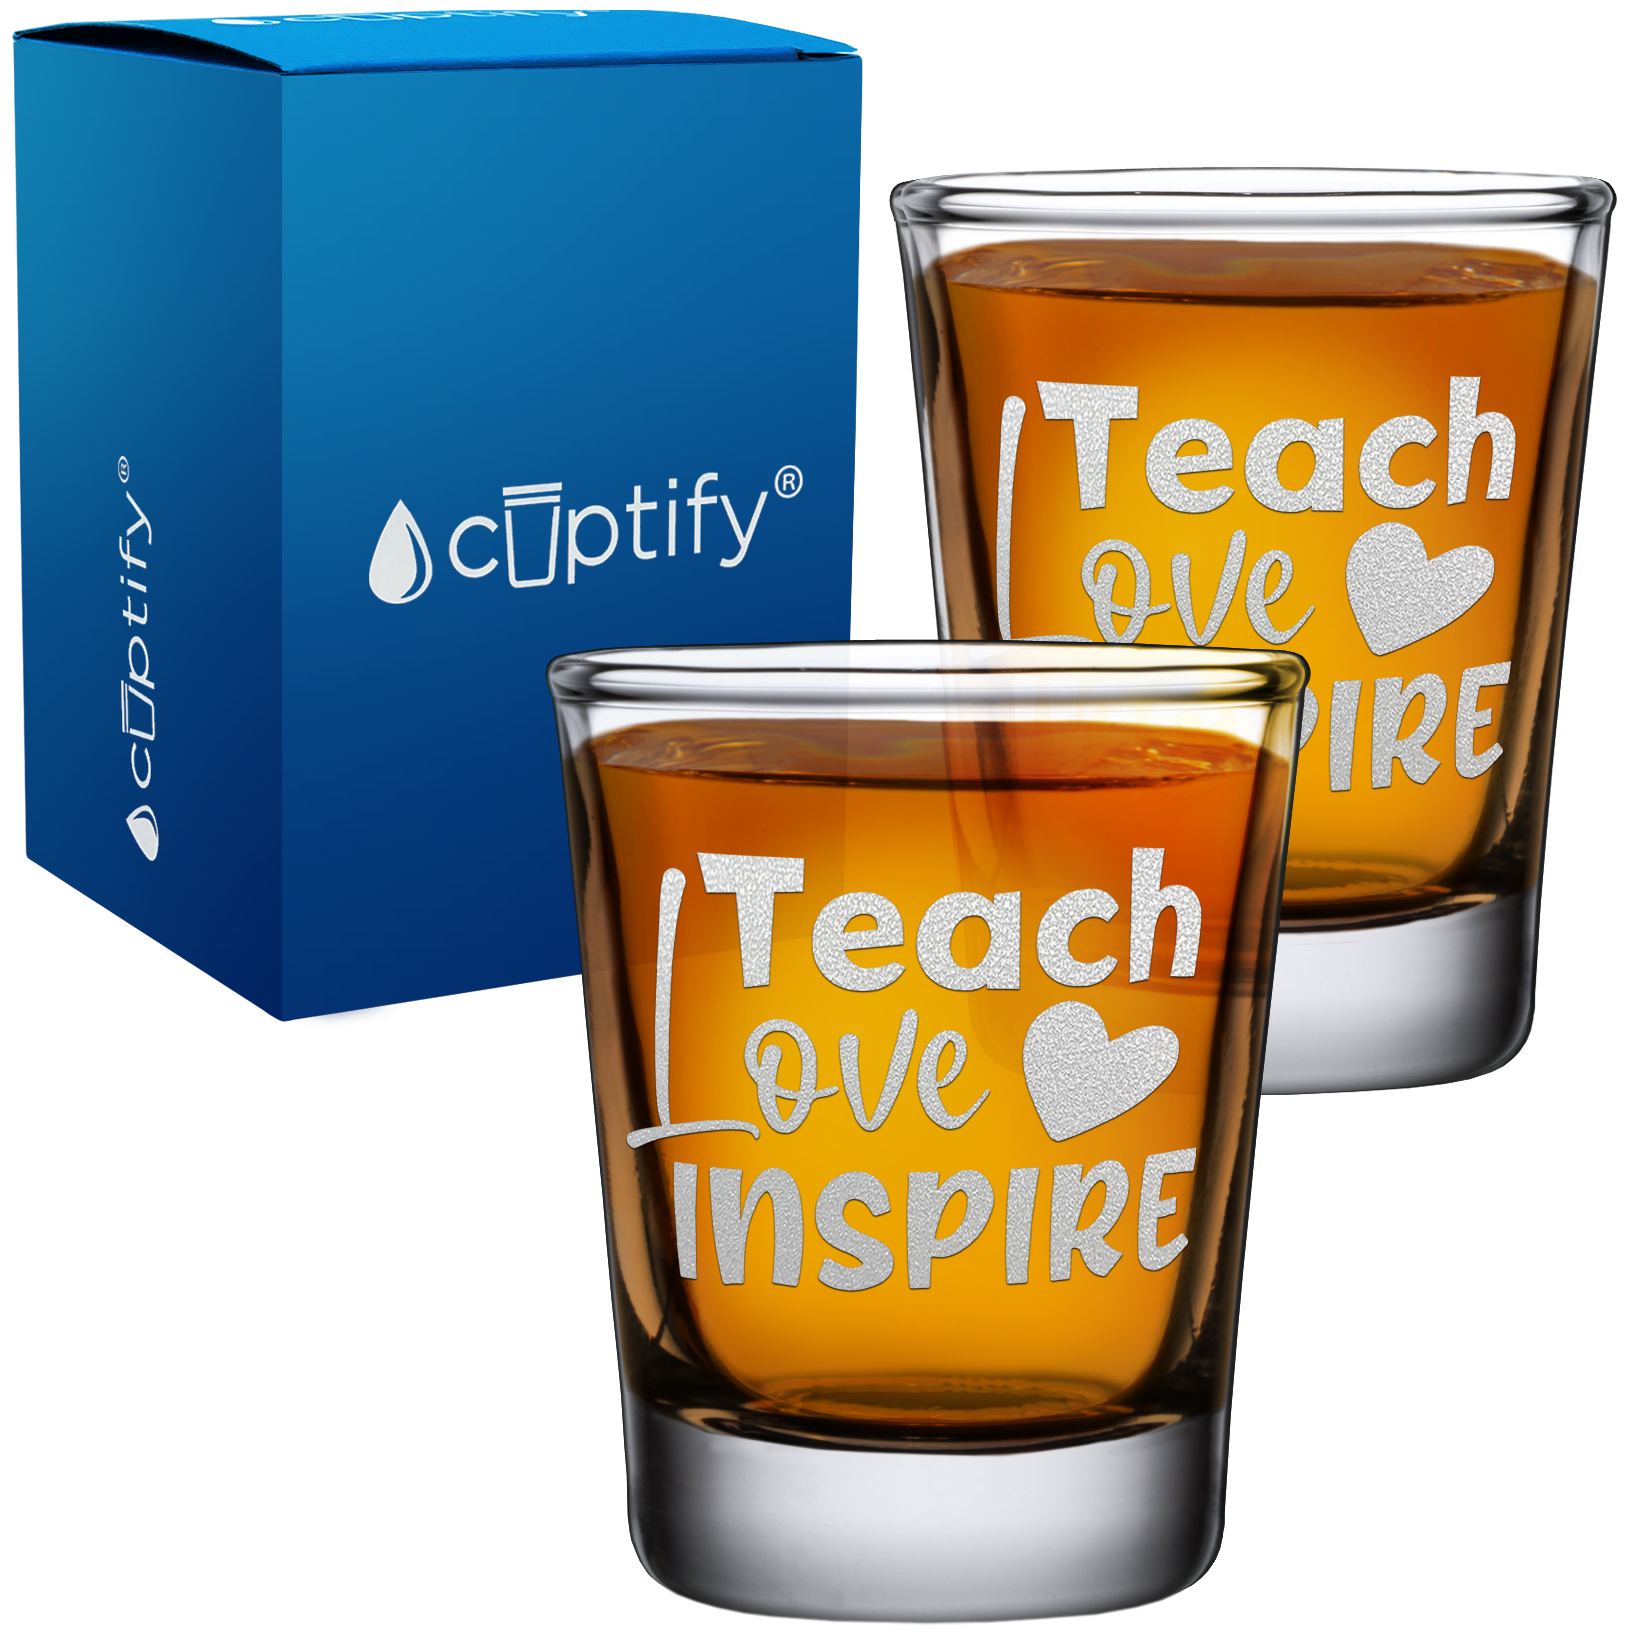 Teach Love Inspire on 2oz Shot Glasses - Set of 2